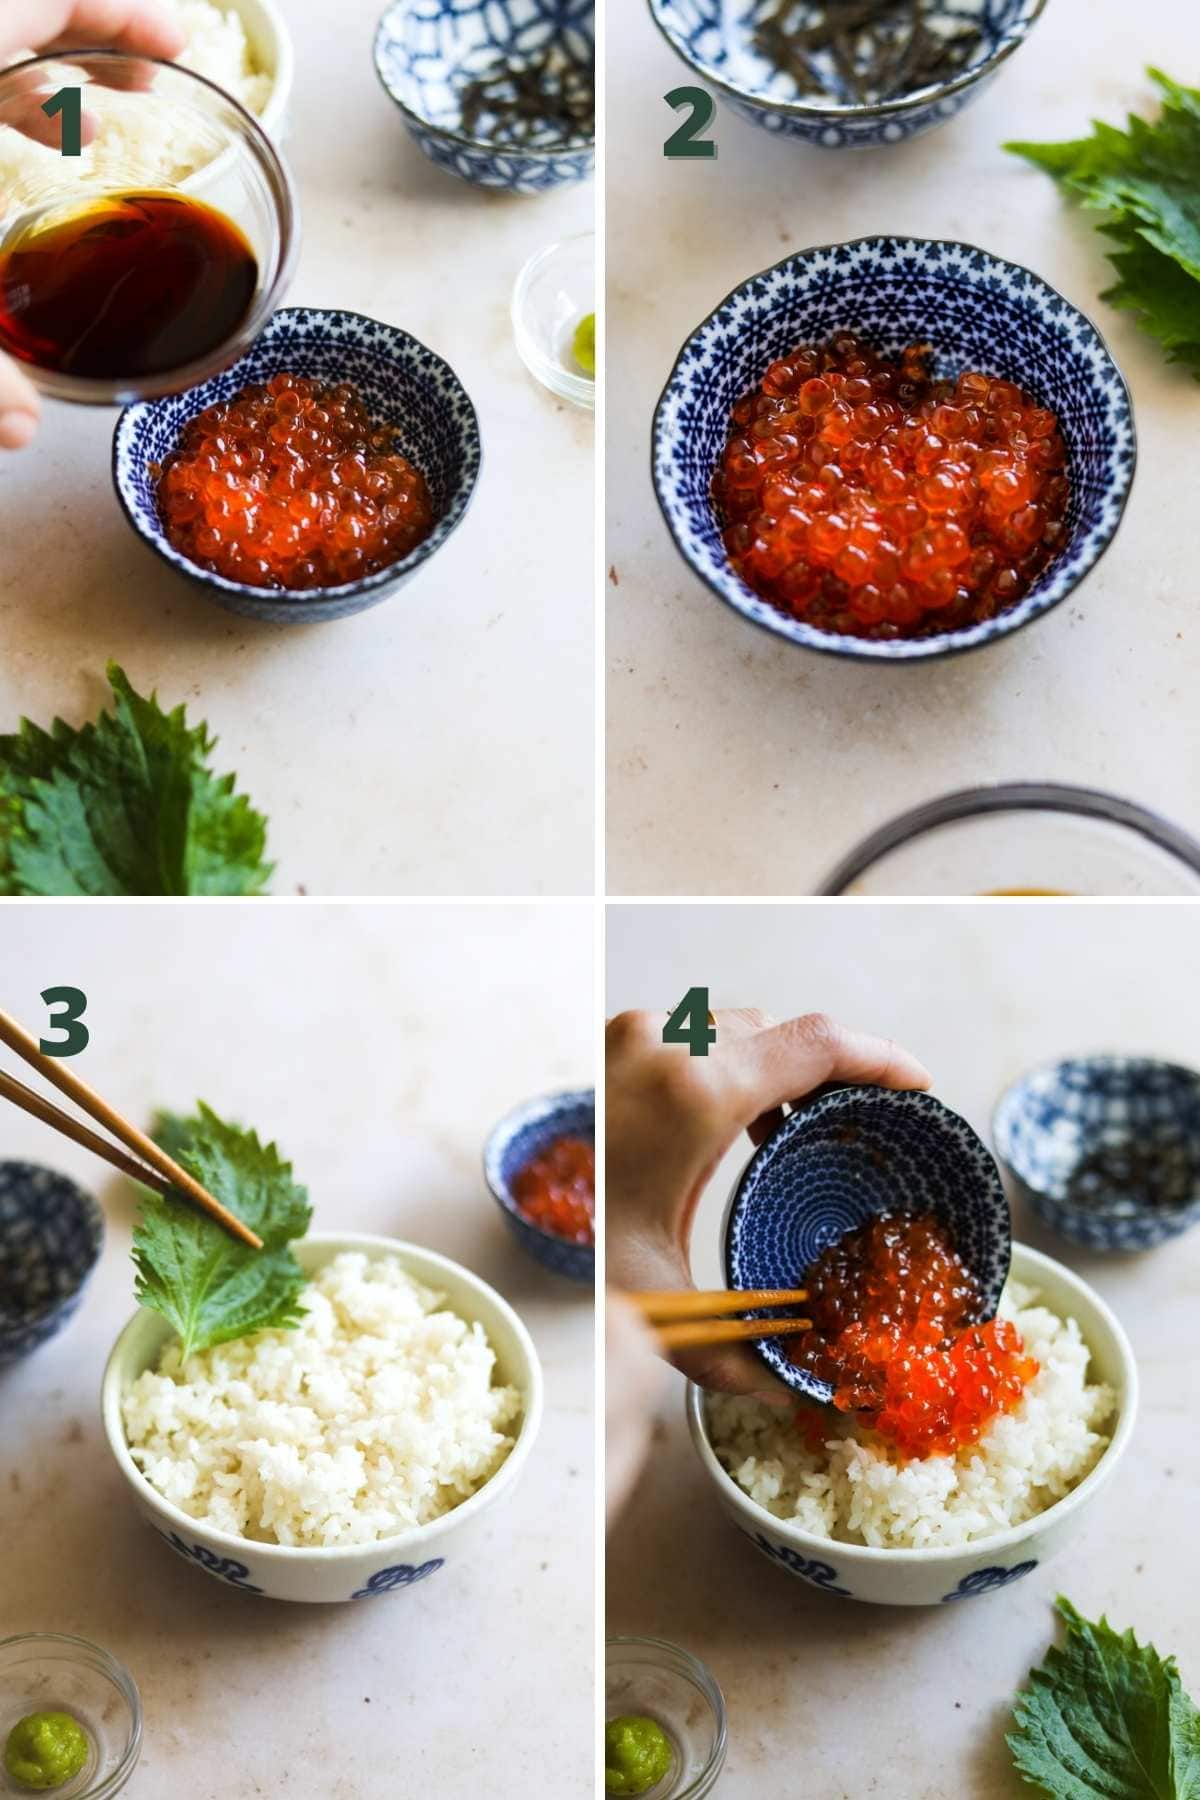 Steps to make ikura salmon roe donburi rice bowl.